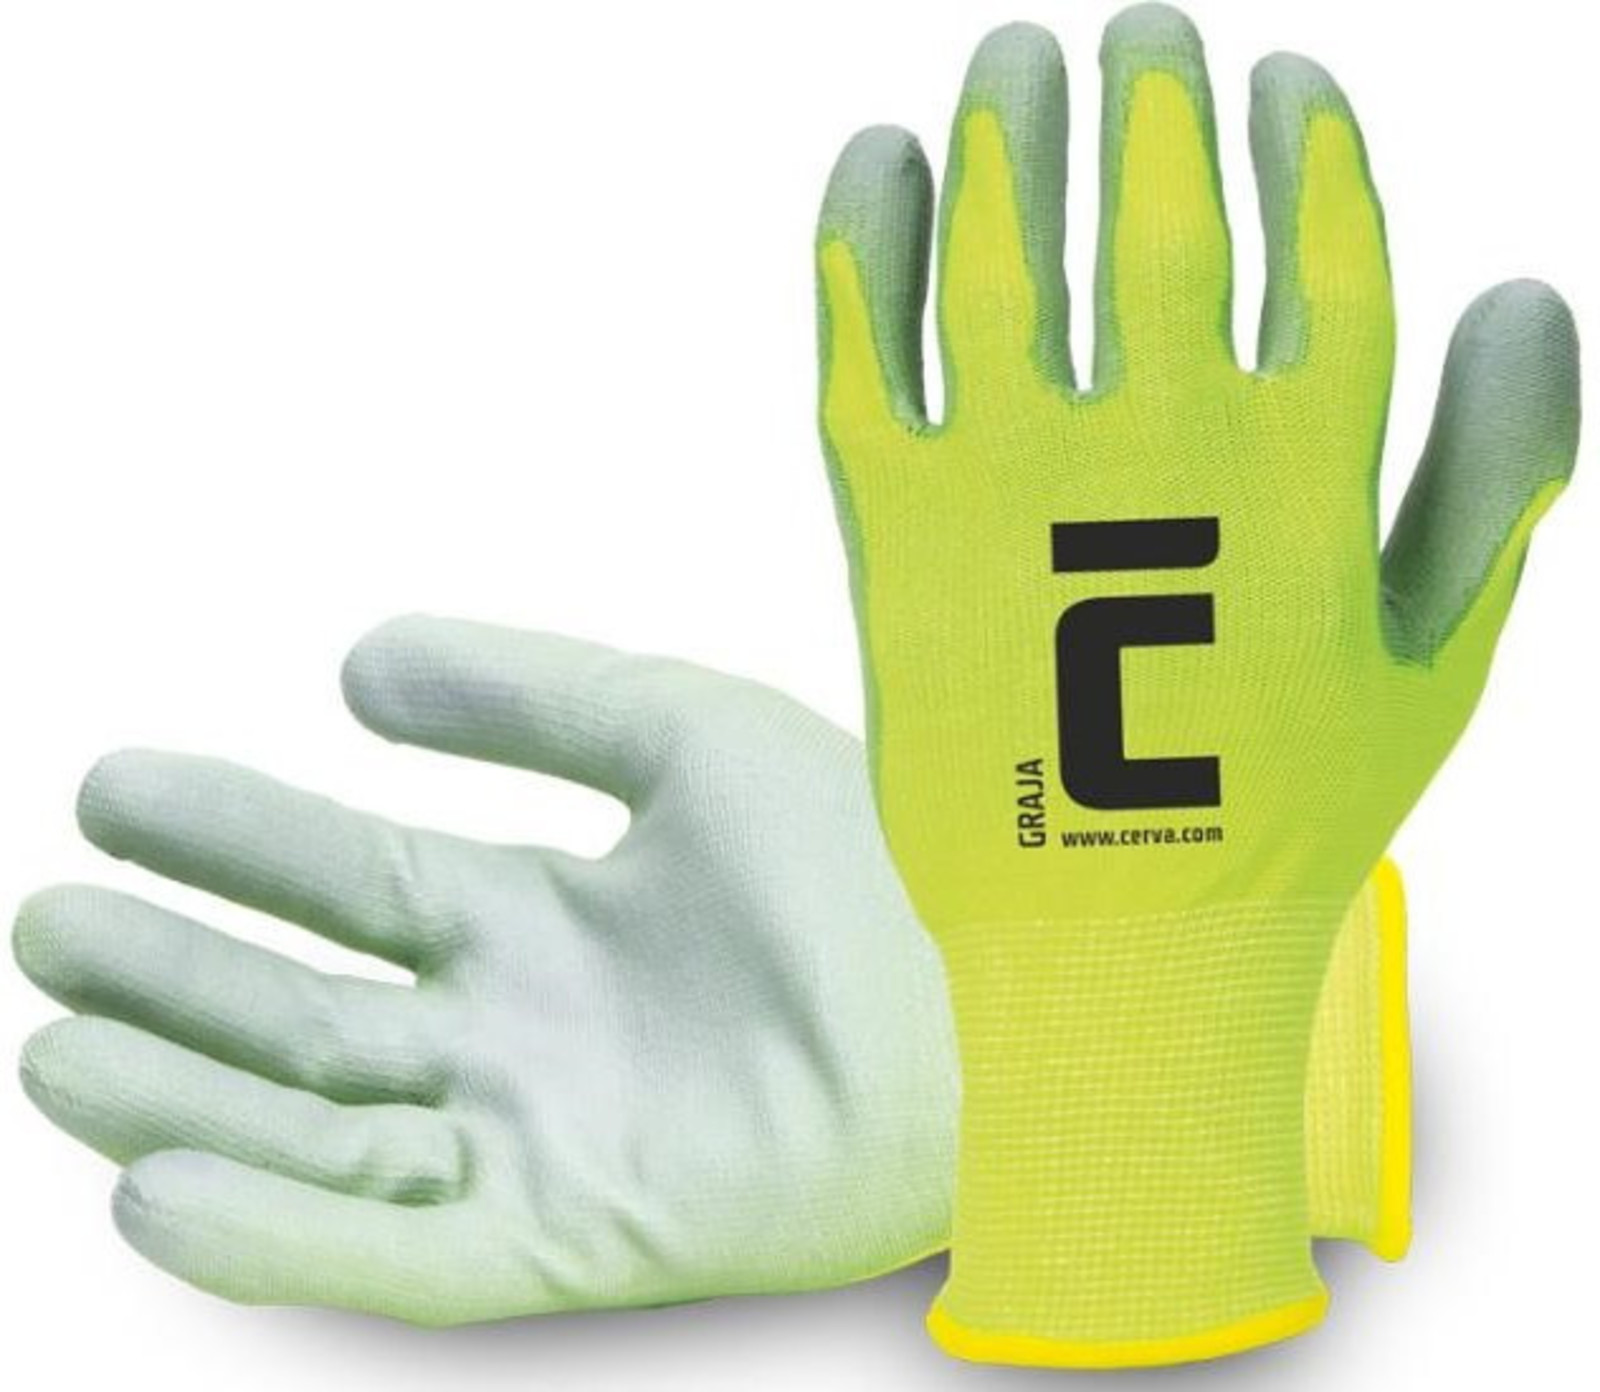 Pracovné rukavice Cerva Graja - veľkosť: 10/XL, farba: žltá